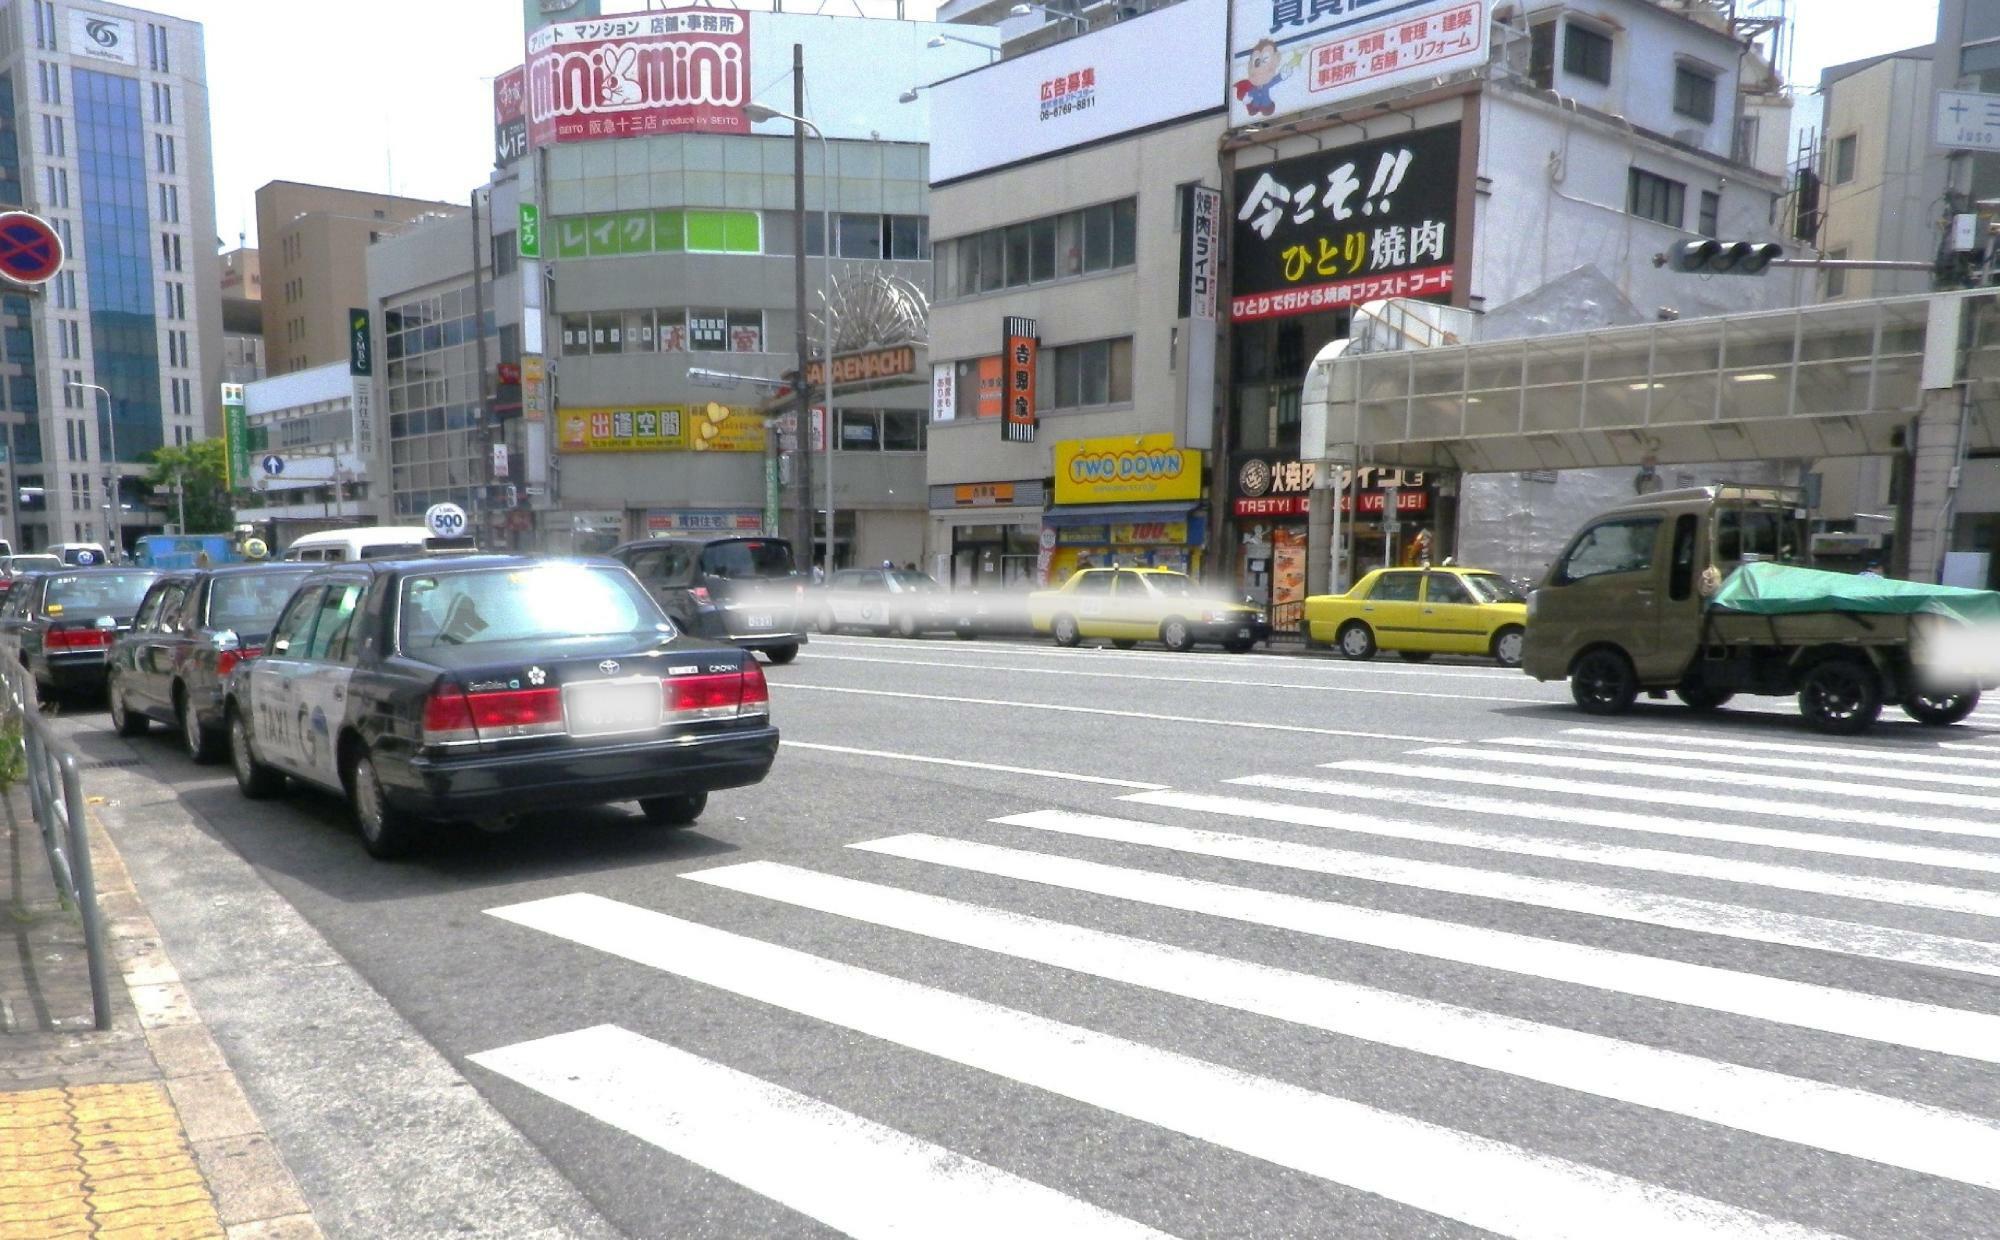 交差点の向こうに見える「吉野家」の横が「サカエマチ商店街」の入口。